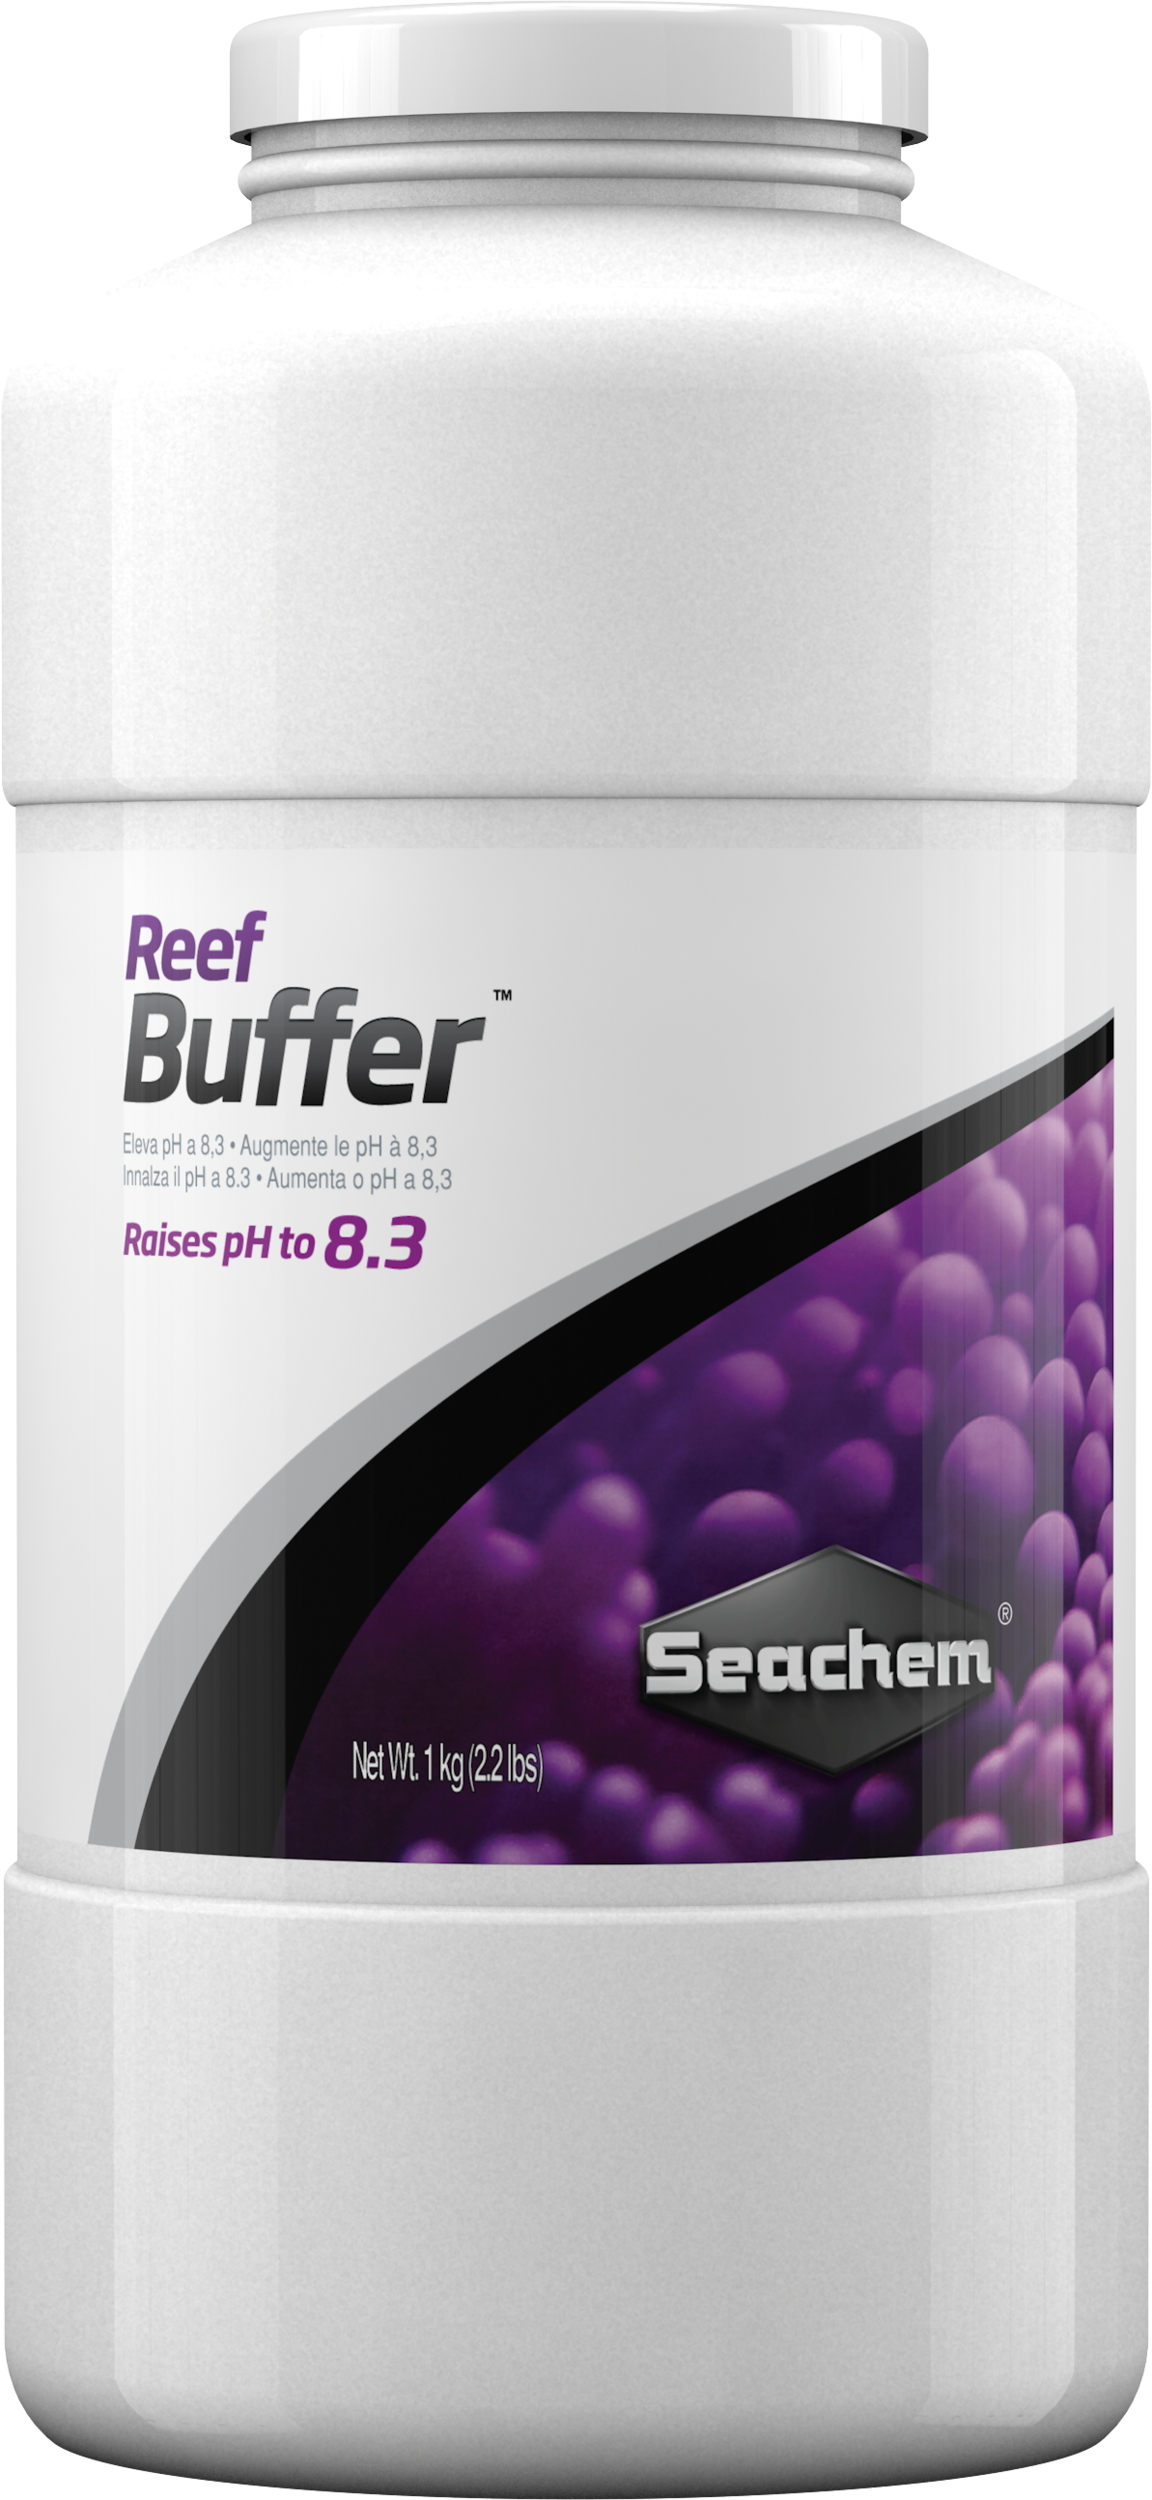 SEACHEM Reef Buffer 1 kg stabilise le pH à 8.3 en aquarium récifal